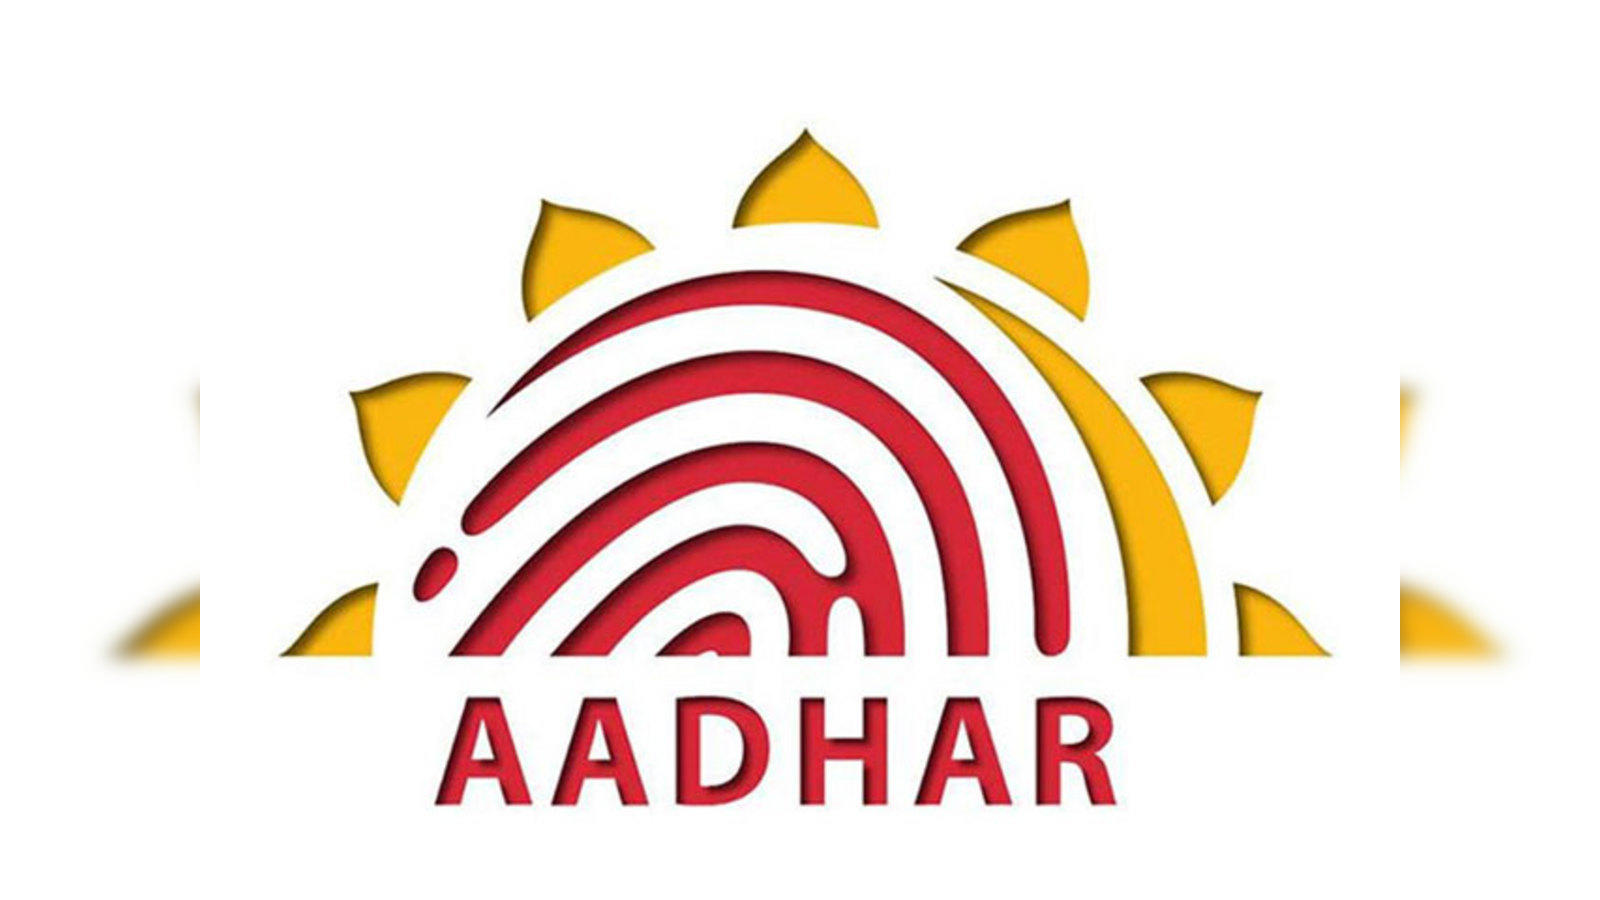 Download Adhar Card - DIGITAL HELP, Govt Apps, Download Adhar Card